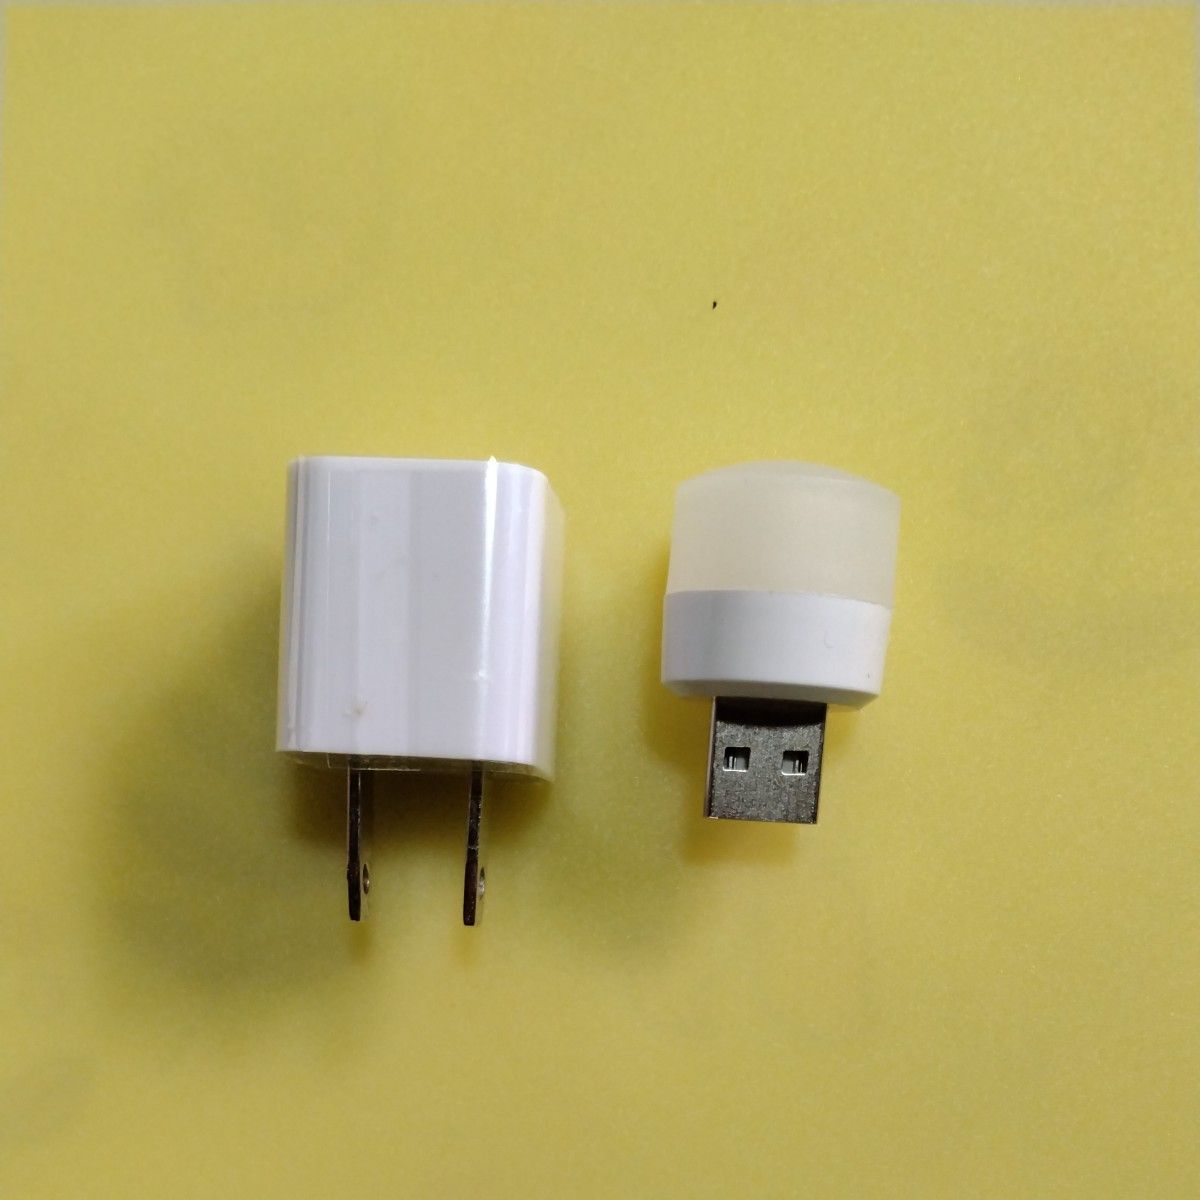 工具道具　 LEDライト暖色新品USB電源付き差し替えると充電器として使用可能